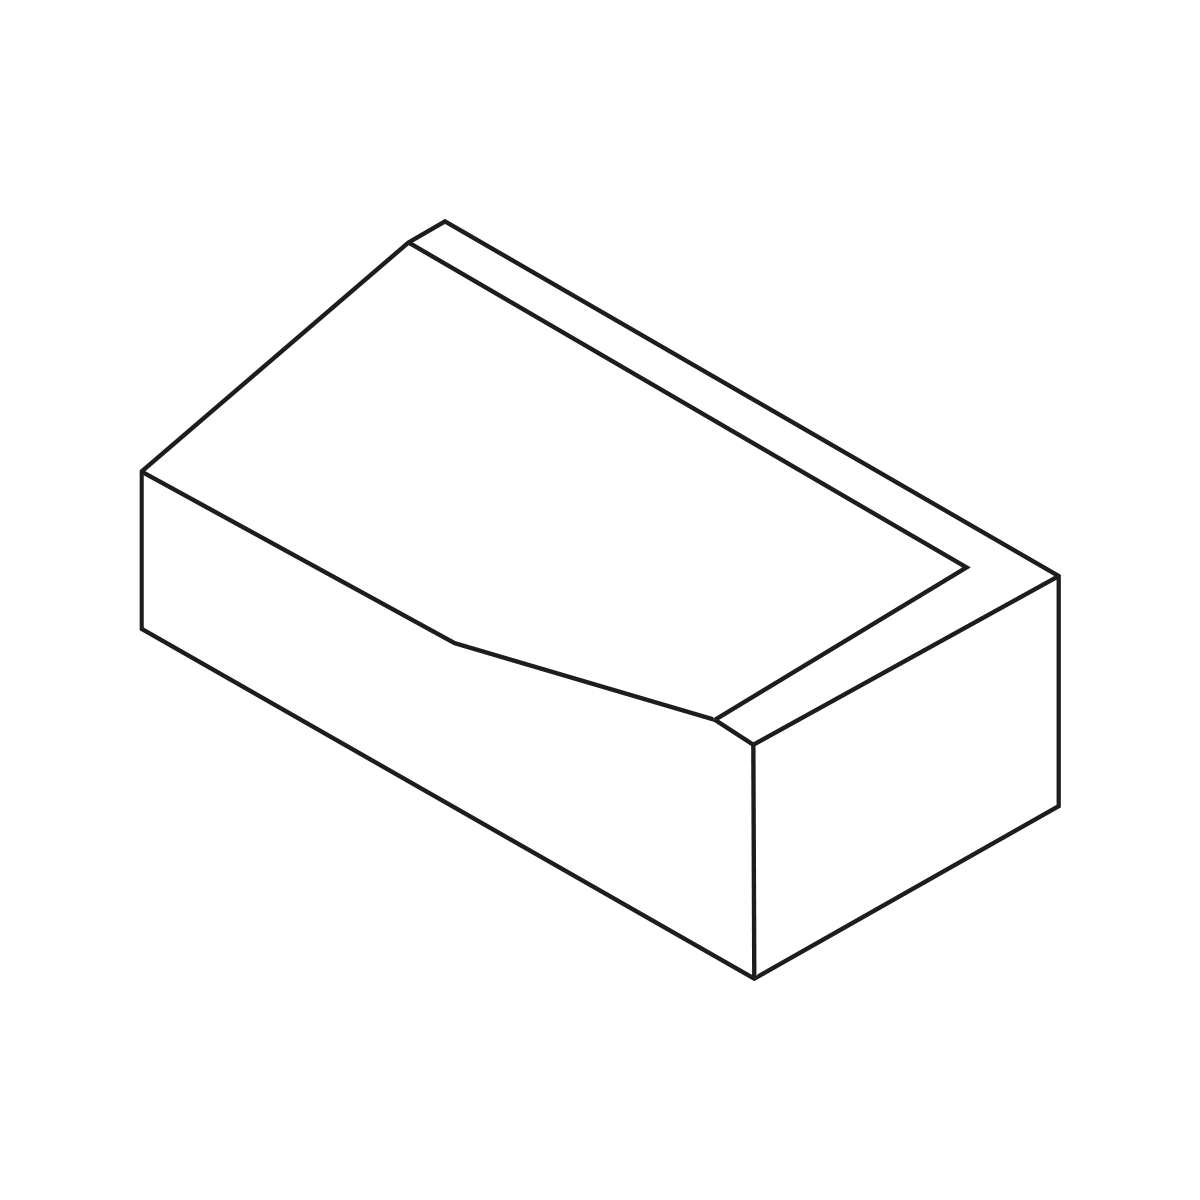 Albertslund-elemente 30x14/20 X 60 cm Anläufer links grau